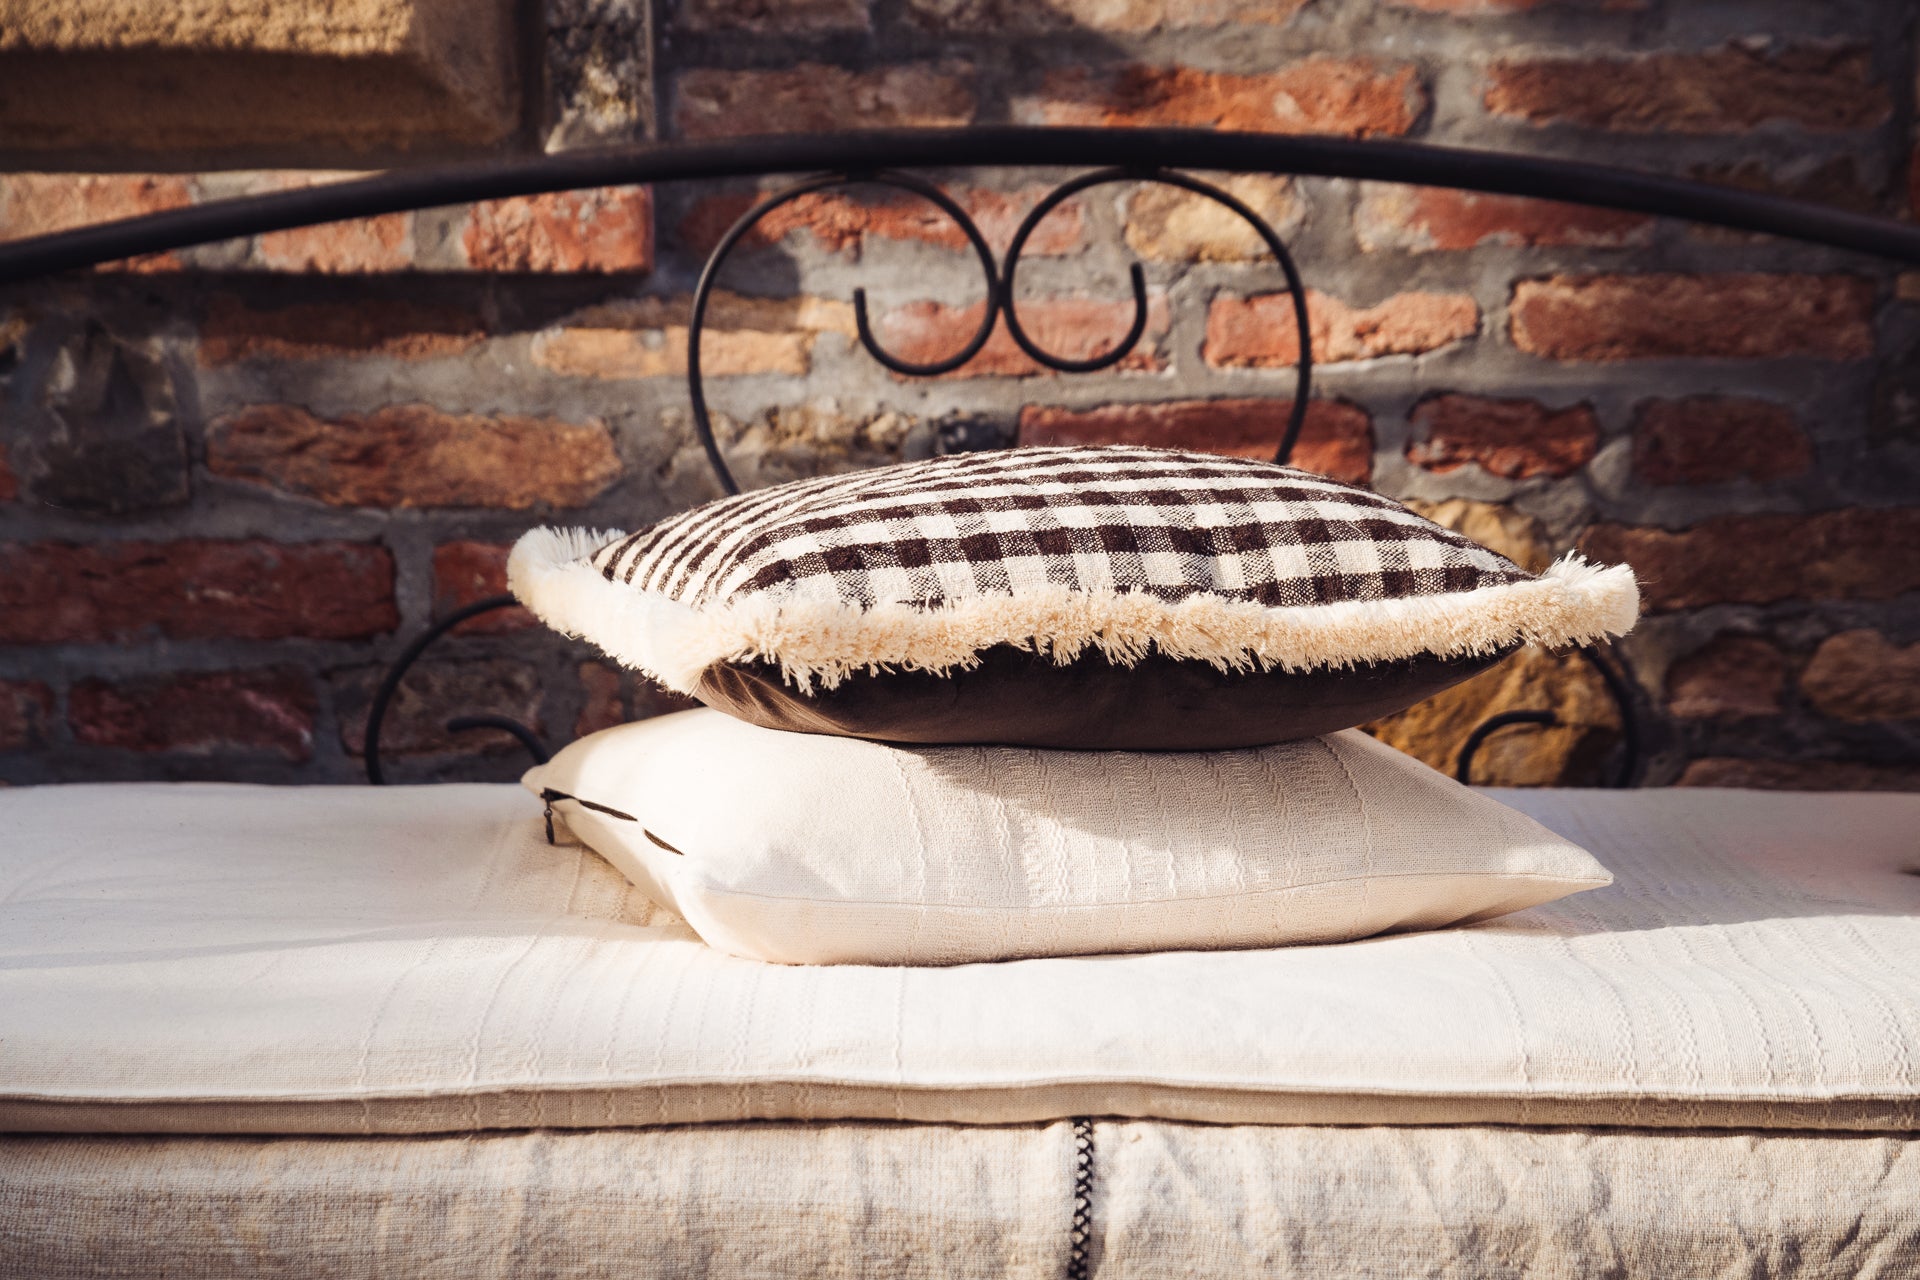 Pillow: Handwoven antique Bulgarian cotton - P481